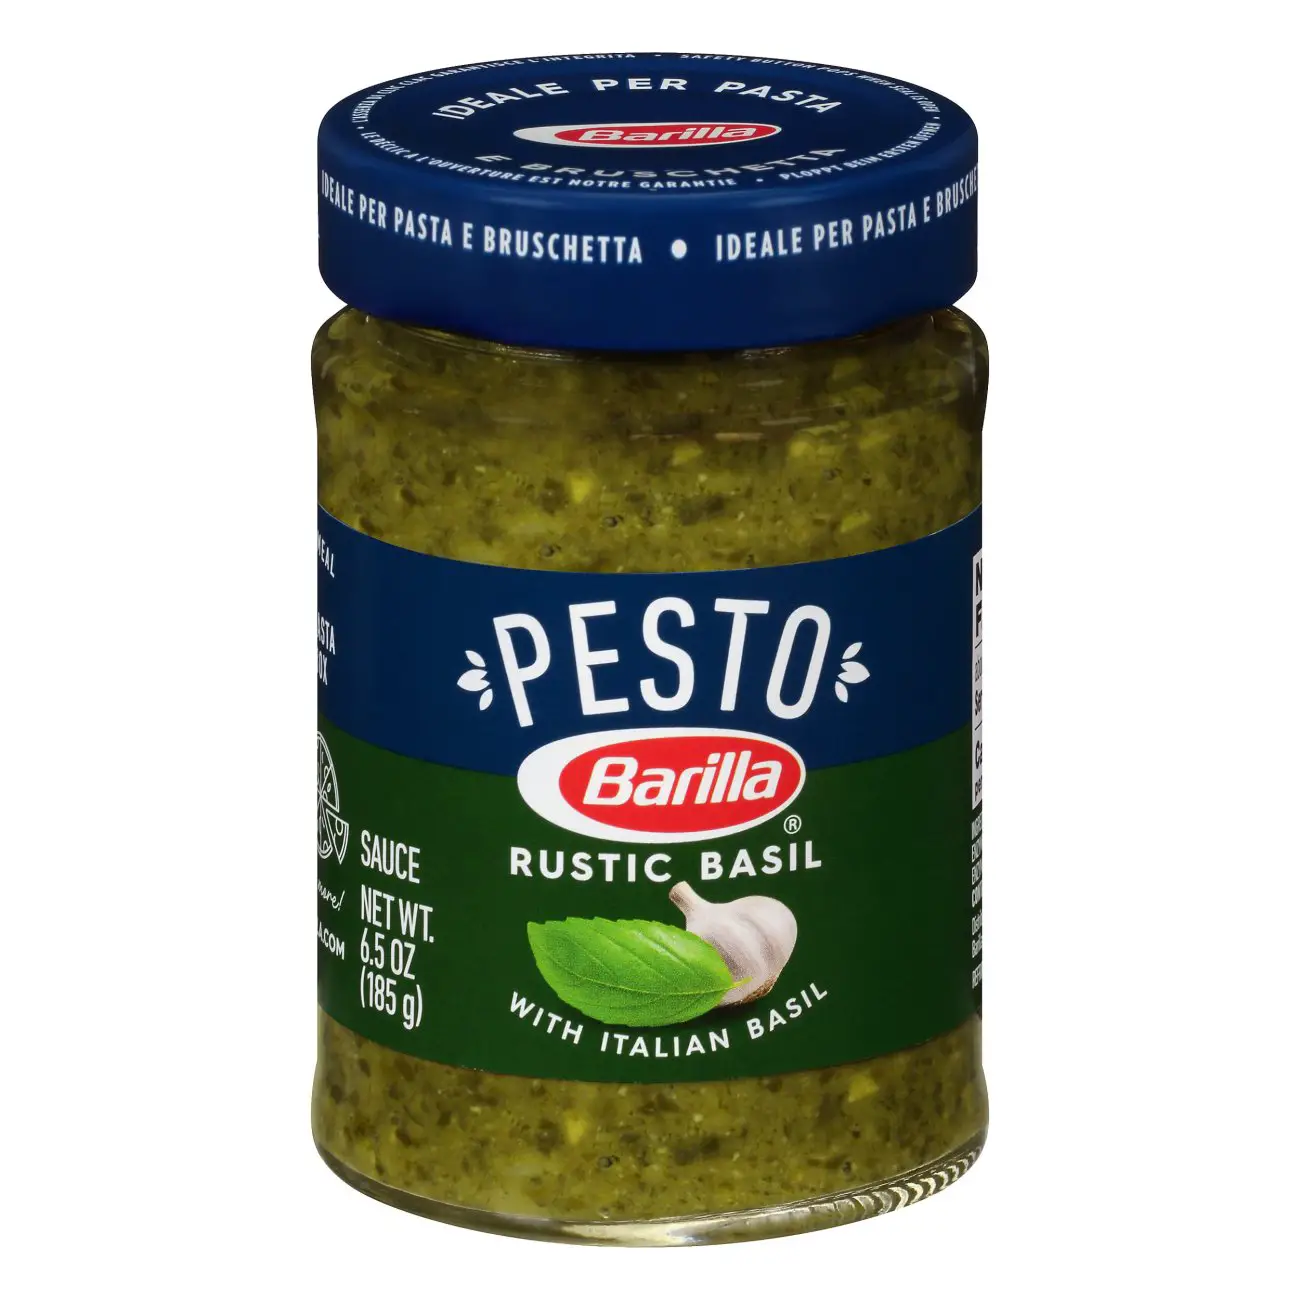 Barilla Rustic Basil Pesto Sauce and Spread